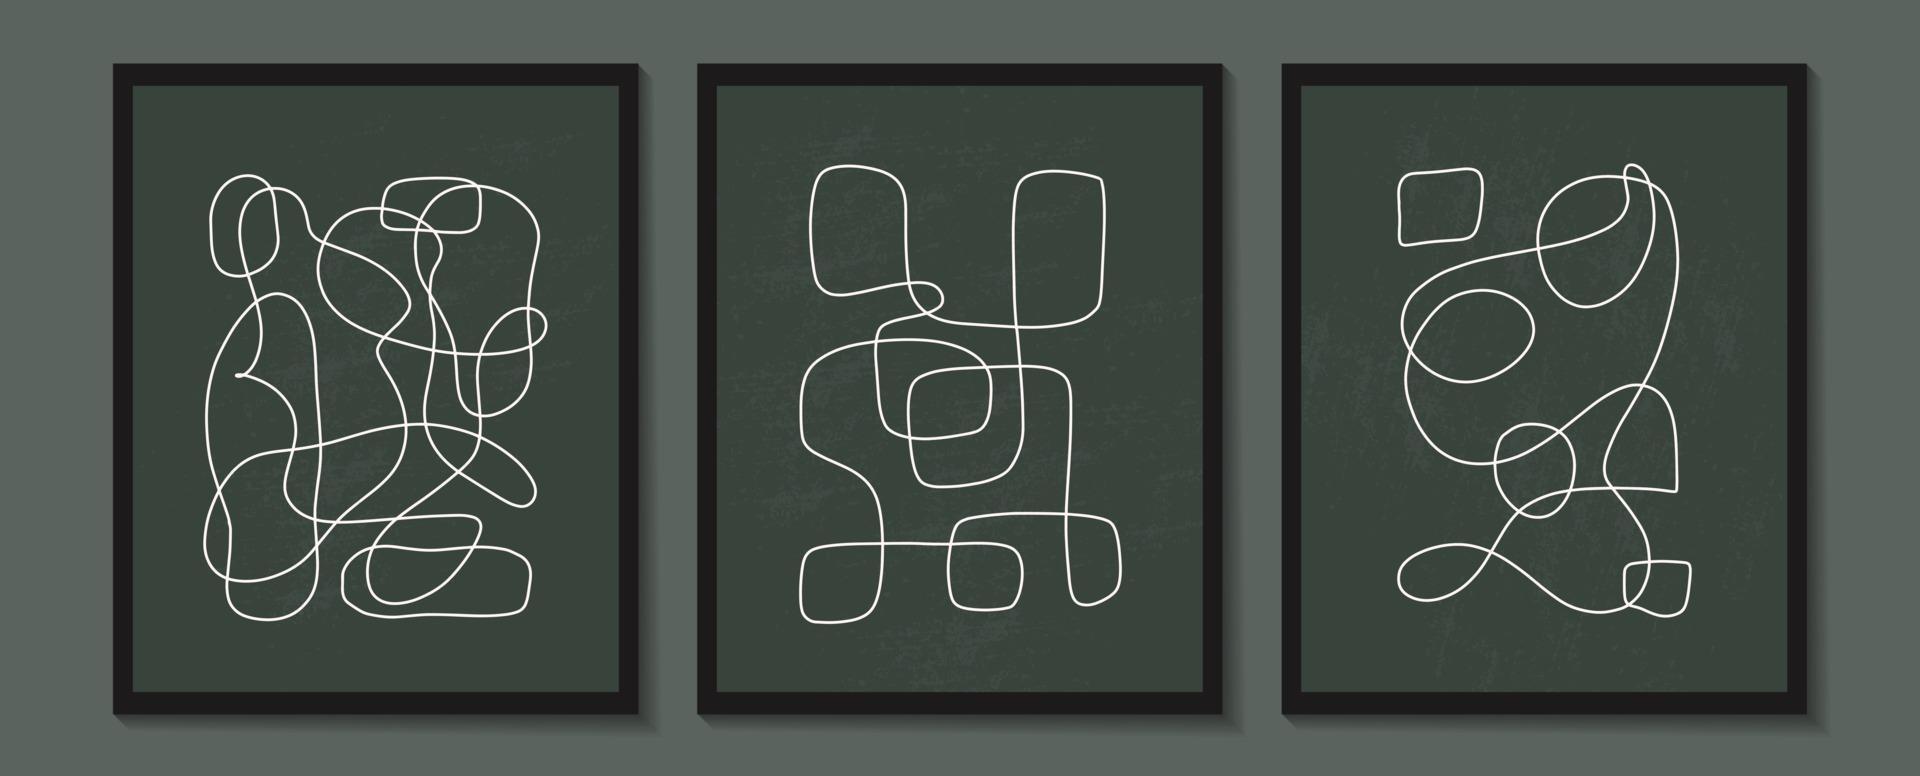 moderno conjunto contemporáneo de composición artística pintada a mano minimalista geométrica creativa abstracta. carteles vectoriales para decoración de paredes en estilo vintage vector